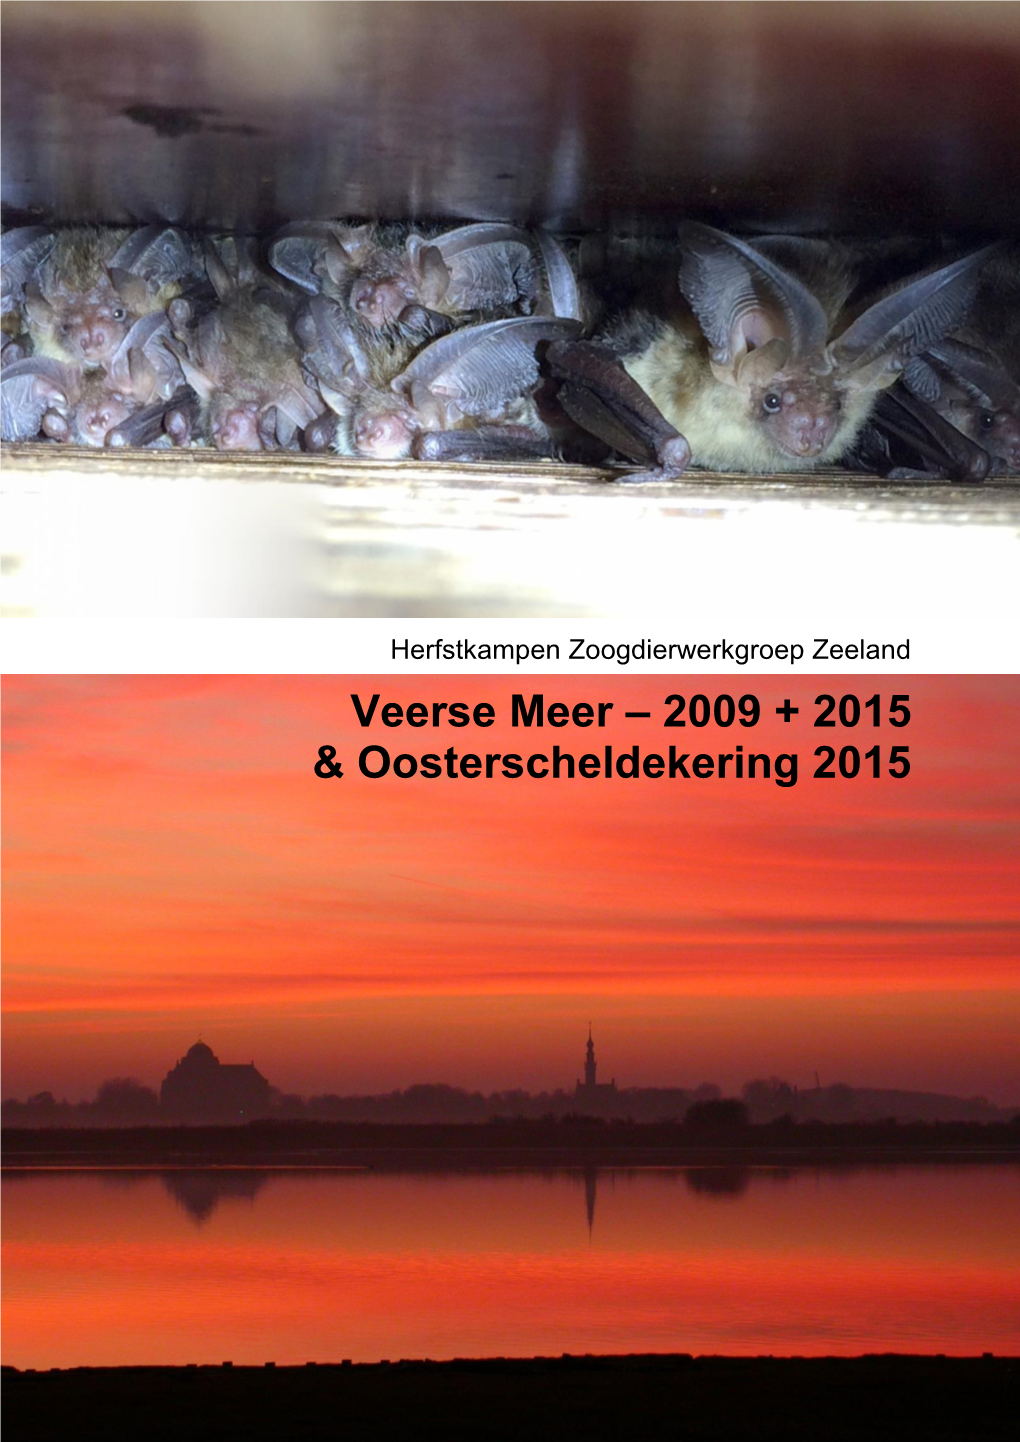 Veerse Meer – 2009 + 2015 & Oosterscheldekering 2015